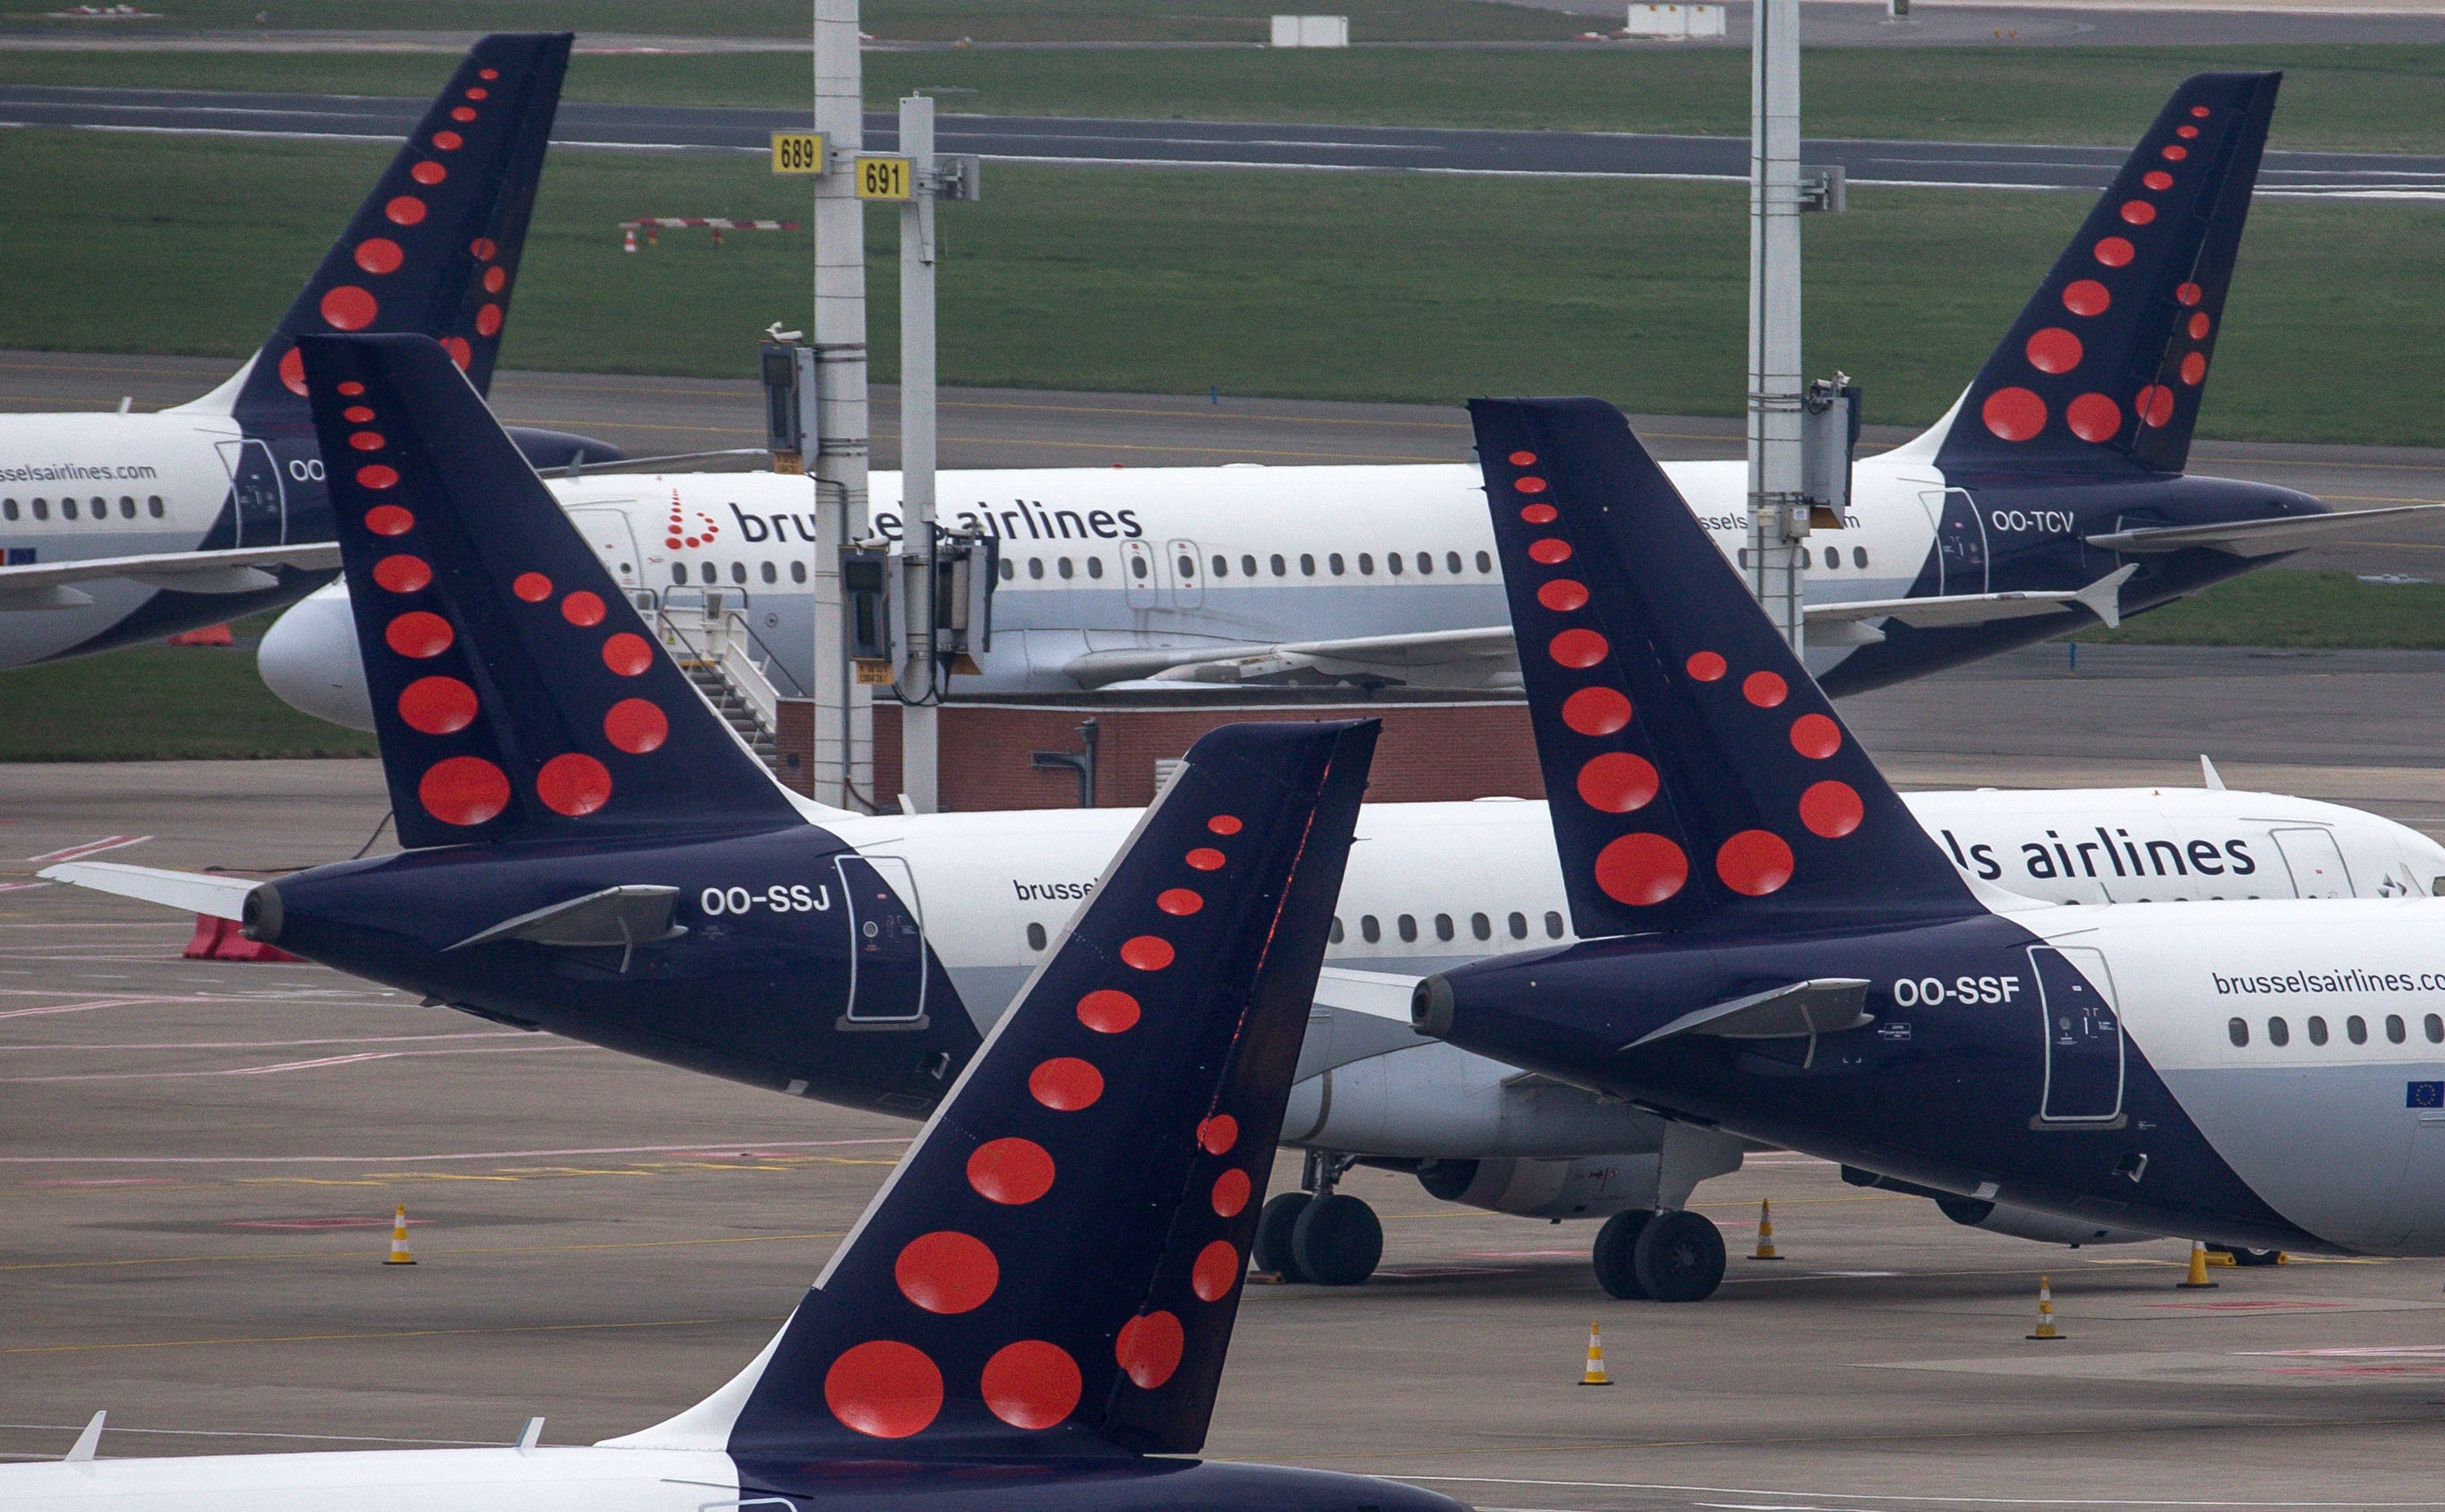 Punonjësit e "Brussels Airlines" hyjnë në grevë, anulohen shumë fluturime